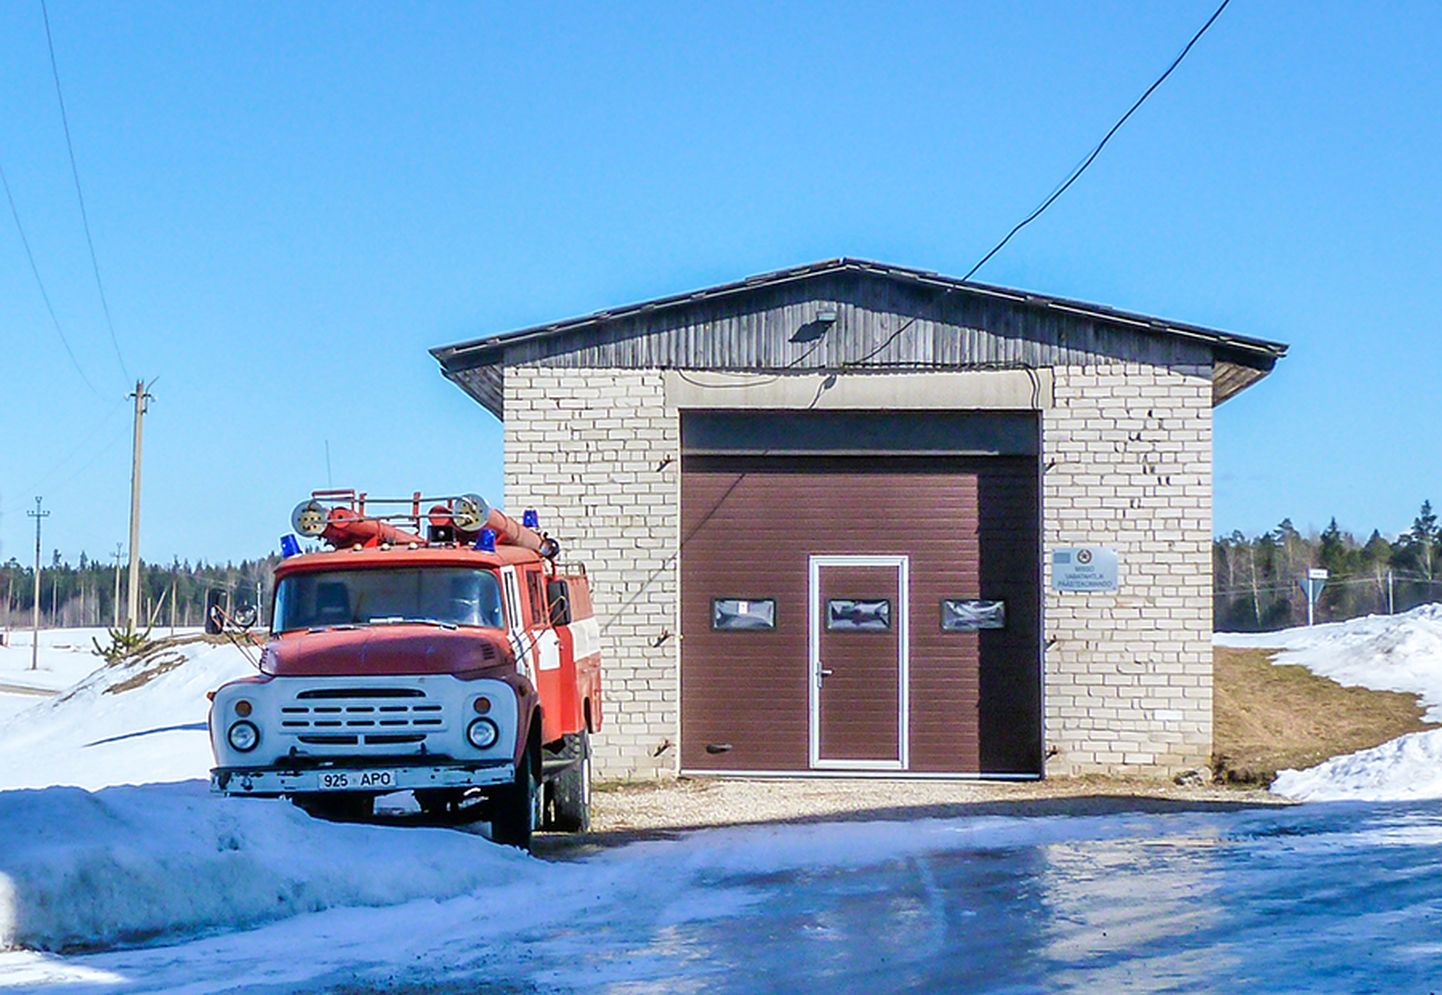 Misso vabatahtlike tuletõrjedepoo, mille ehitamine on planeeritud valla käesoleva aasta eelarvesse.